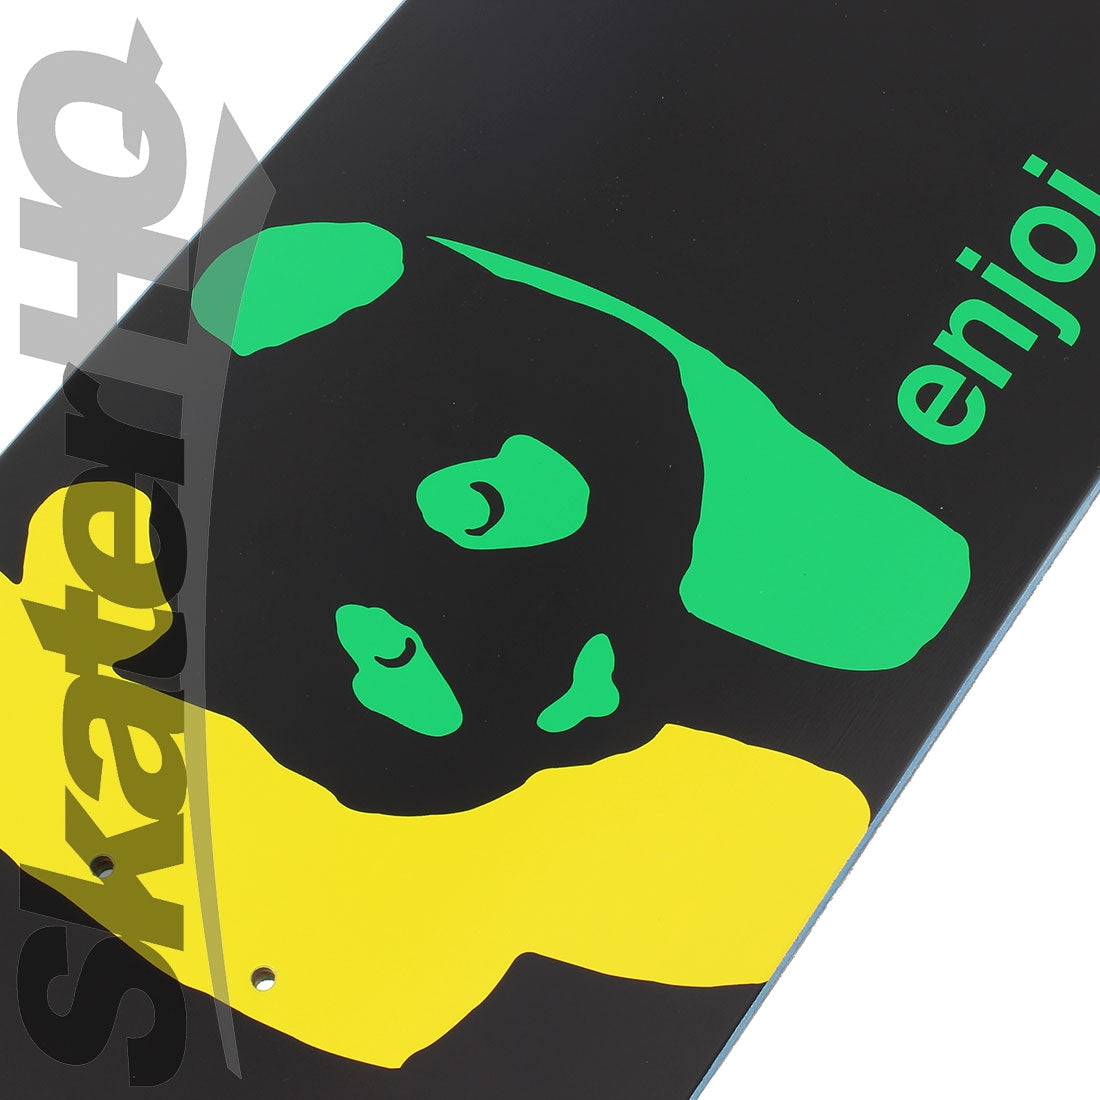 Enjoi Rasta Panda R7 8.0 Deck Skateboard Decks Modern Street